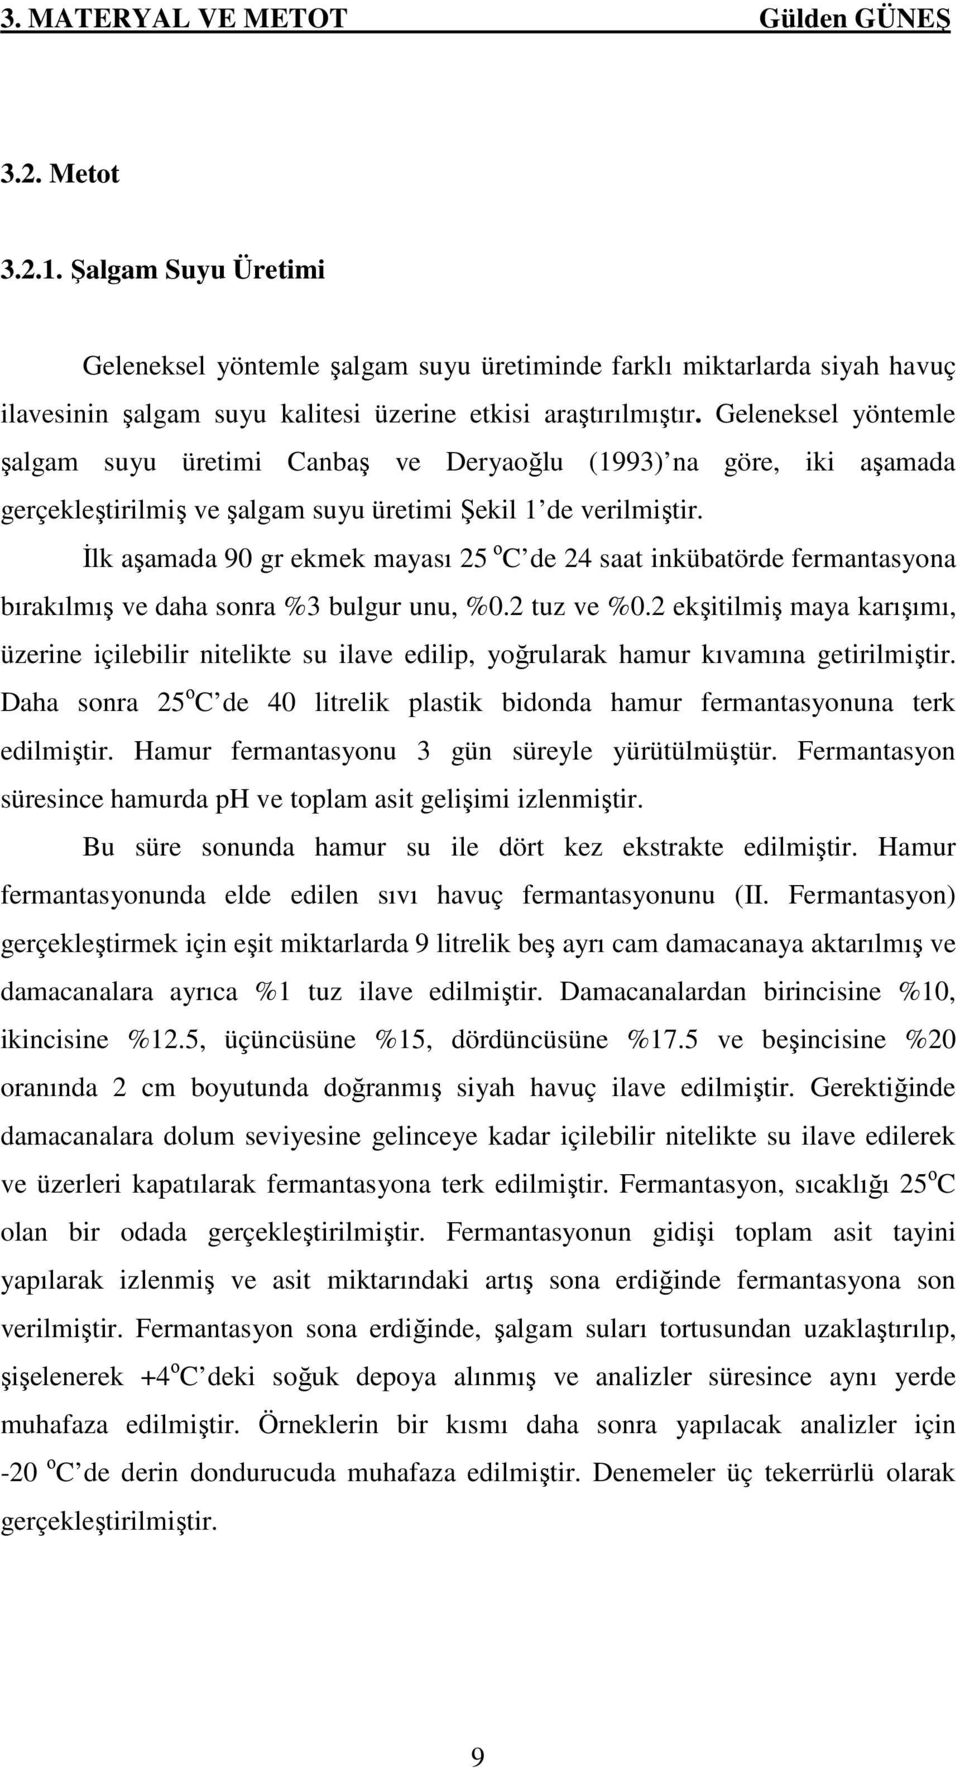 Geleneksel yöntemle şalgam suyu üretimi Canbaş ve Deryaoğlu (1993) na göre, iki aşamada gerçekleştirilmiş ve şalgam suyu üretimi Şekil 1 de verilmiştir.